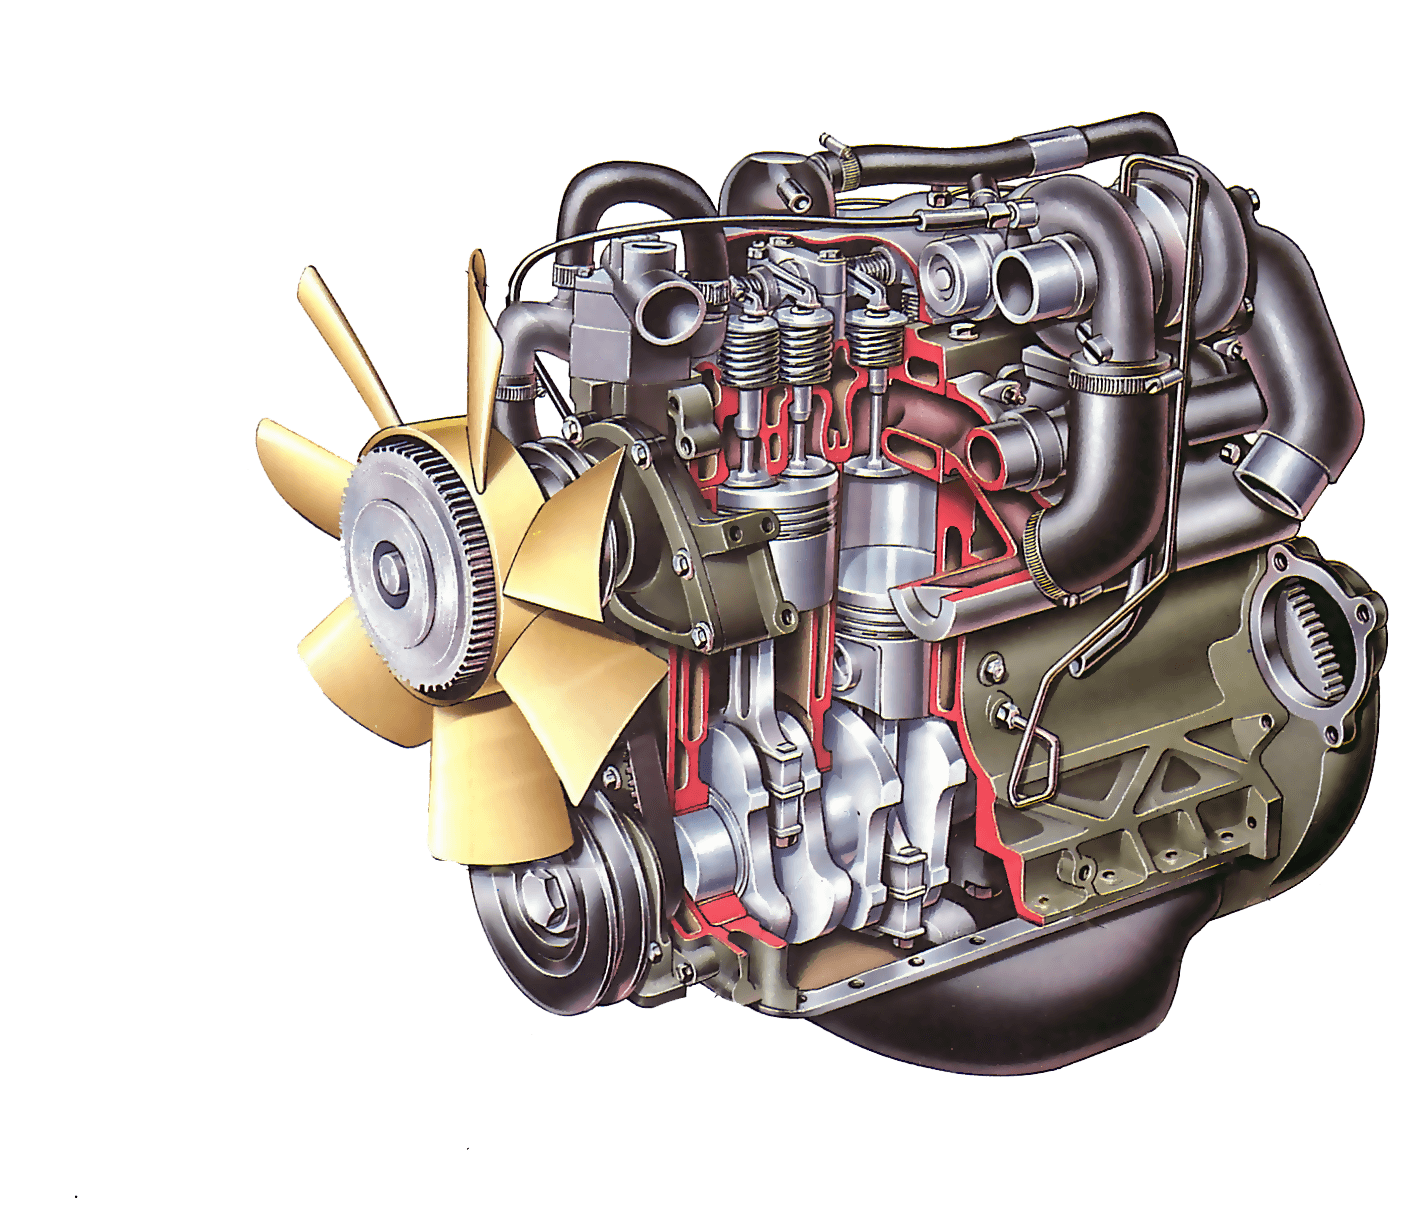 Часть двигателя внутреннего сгорания. Устройство дизельного ДВС. Дизельный двигатель внутреннего сгорания. Двигатели внутреннего сгорания дизельный двигатель. Дизельный двигатель внутреннего сгорания автомобиля.